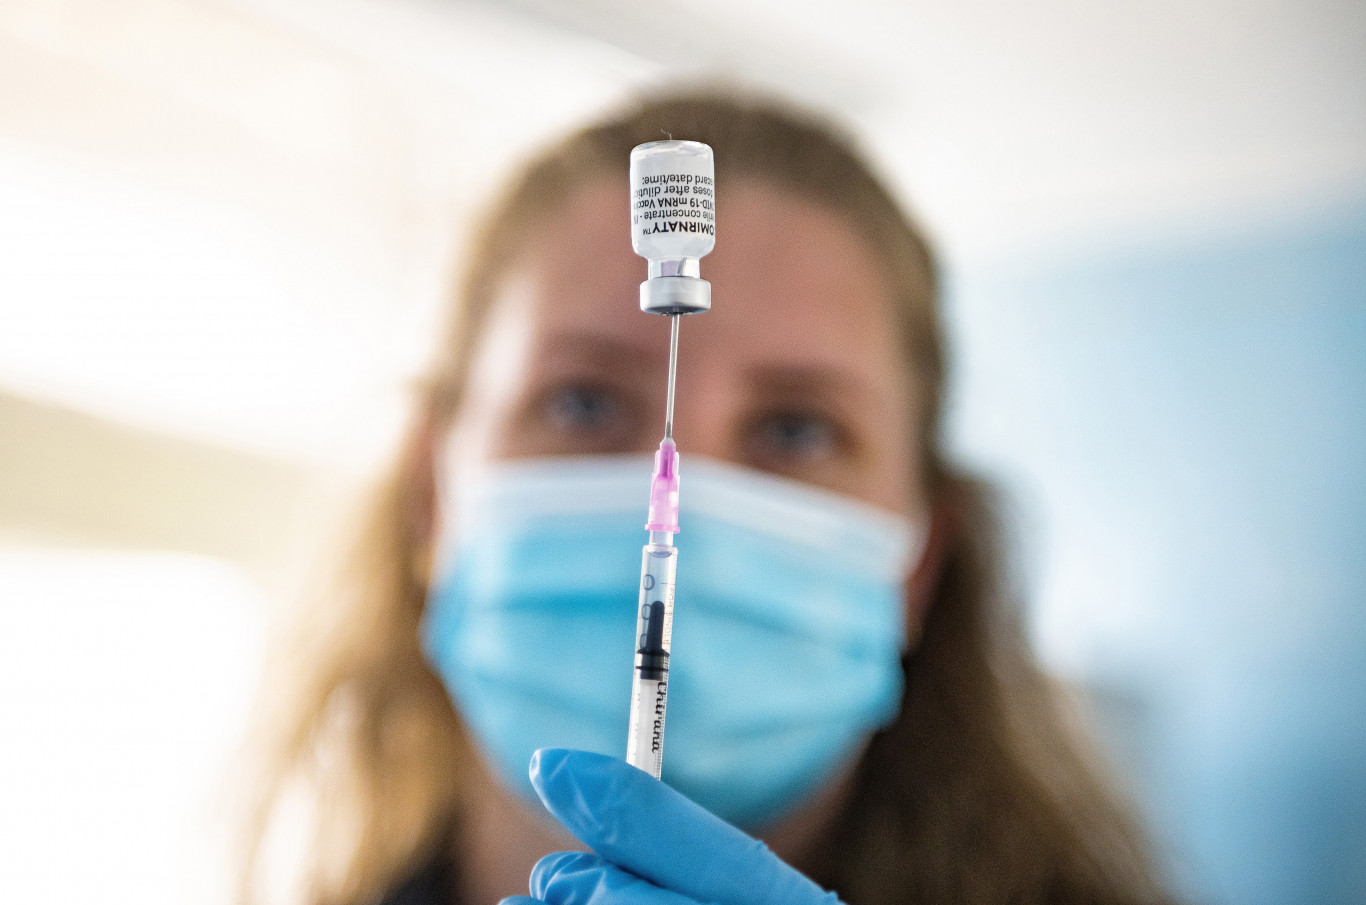 Nem biztos, hogy jó ötlet rövid úton véget vetni a vakcinaháborúnak – Qubit